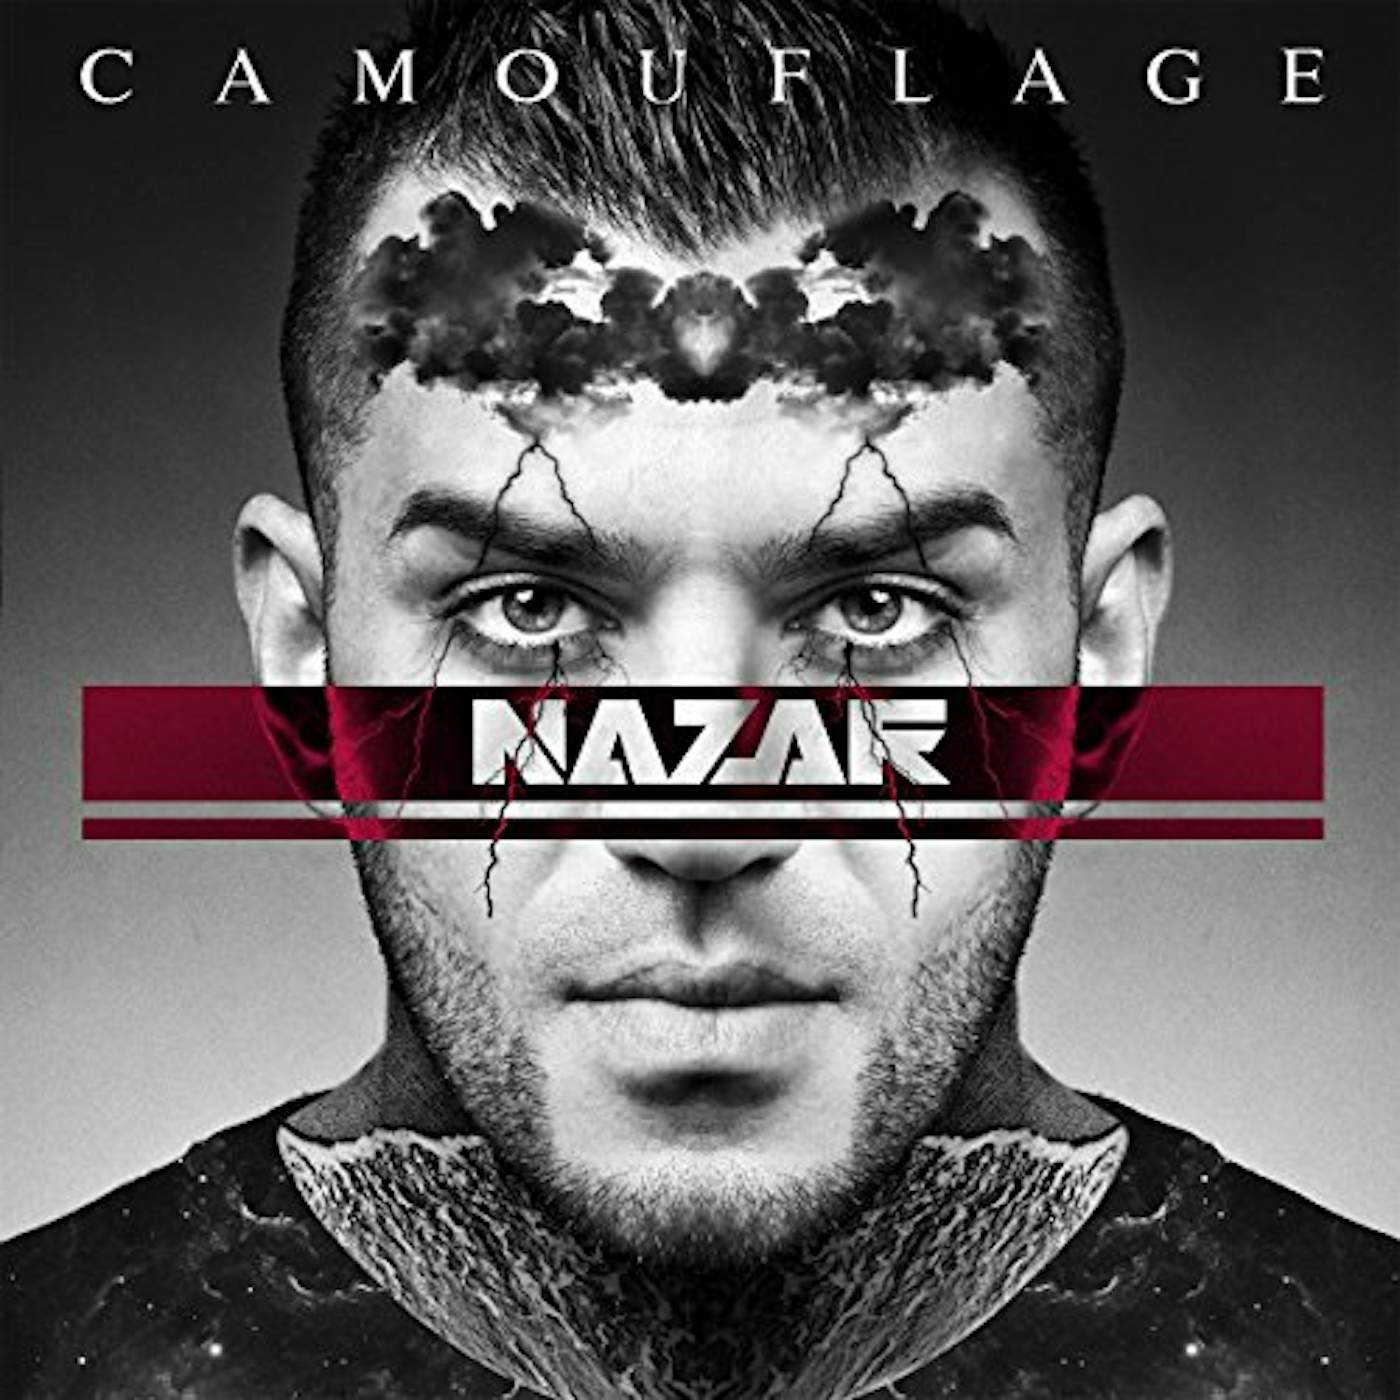 Nazar CAMOUFLAGE: PREMIUM EDITION CD